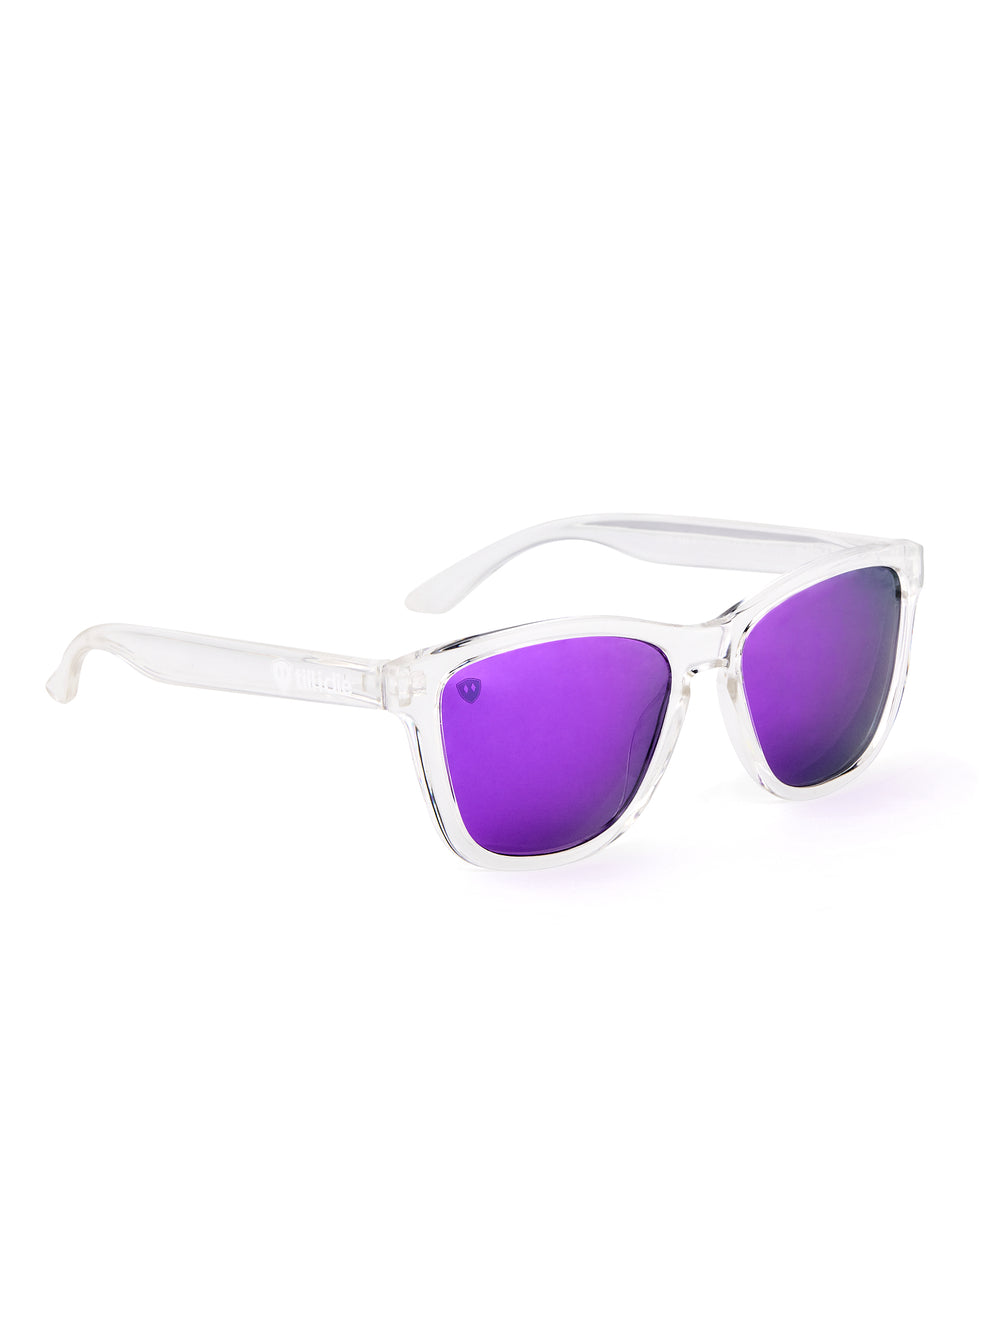 Violet Haze // Polarized Sunglasses // Transparent + Violet